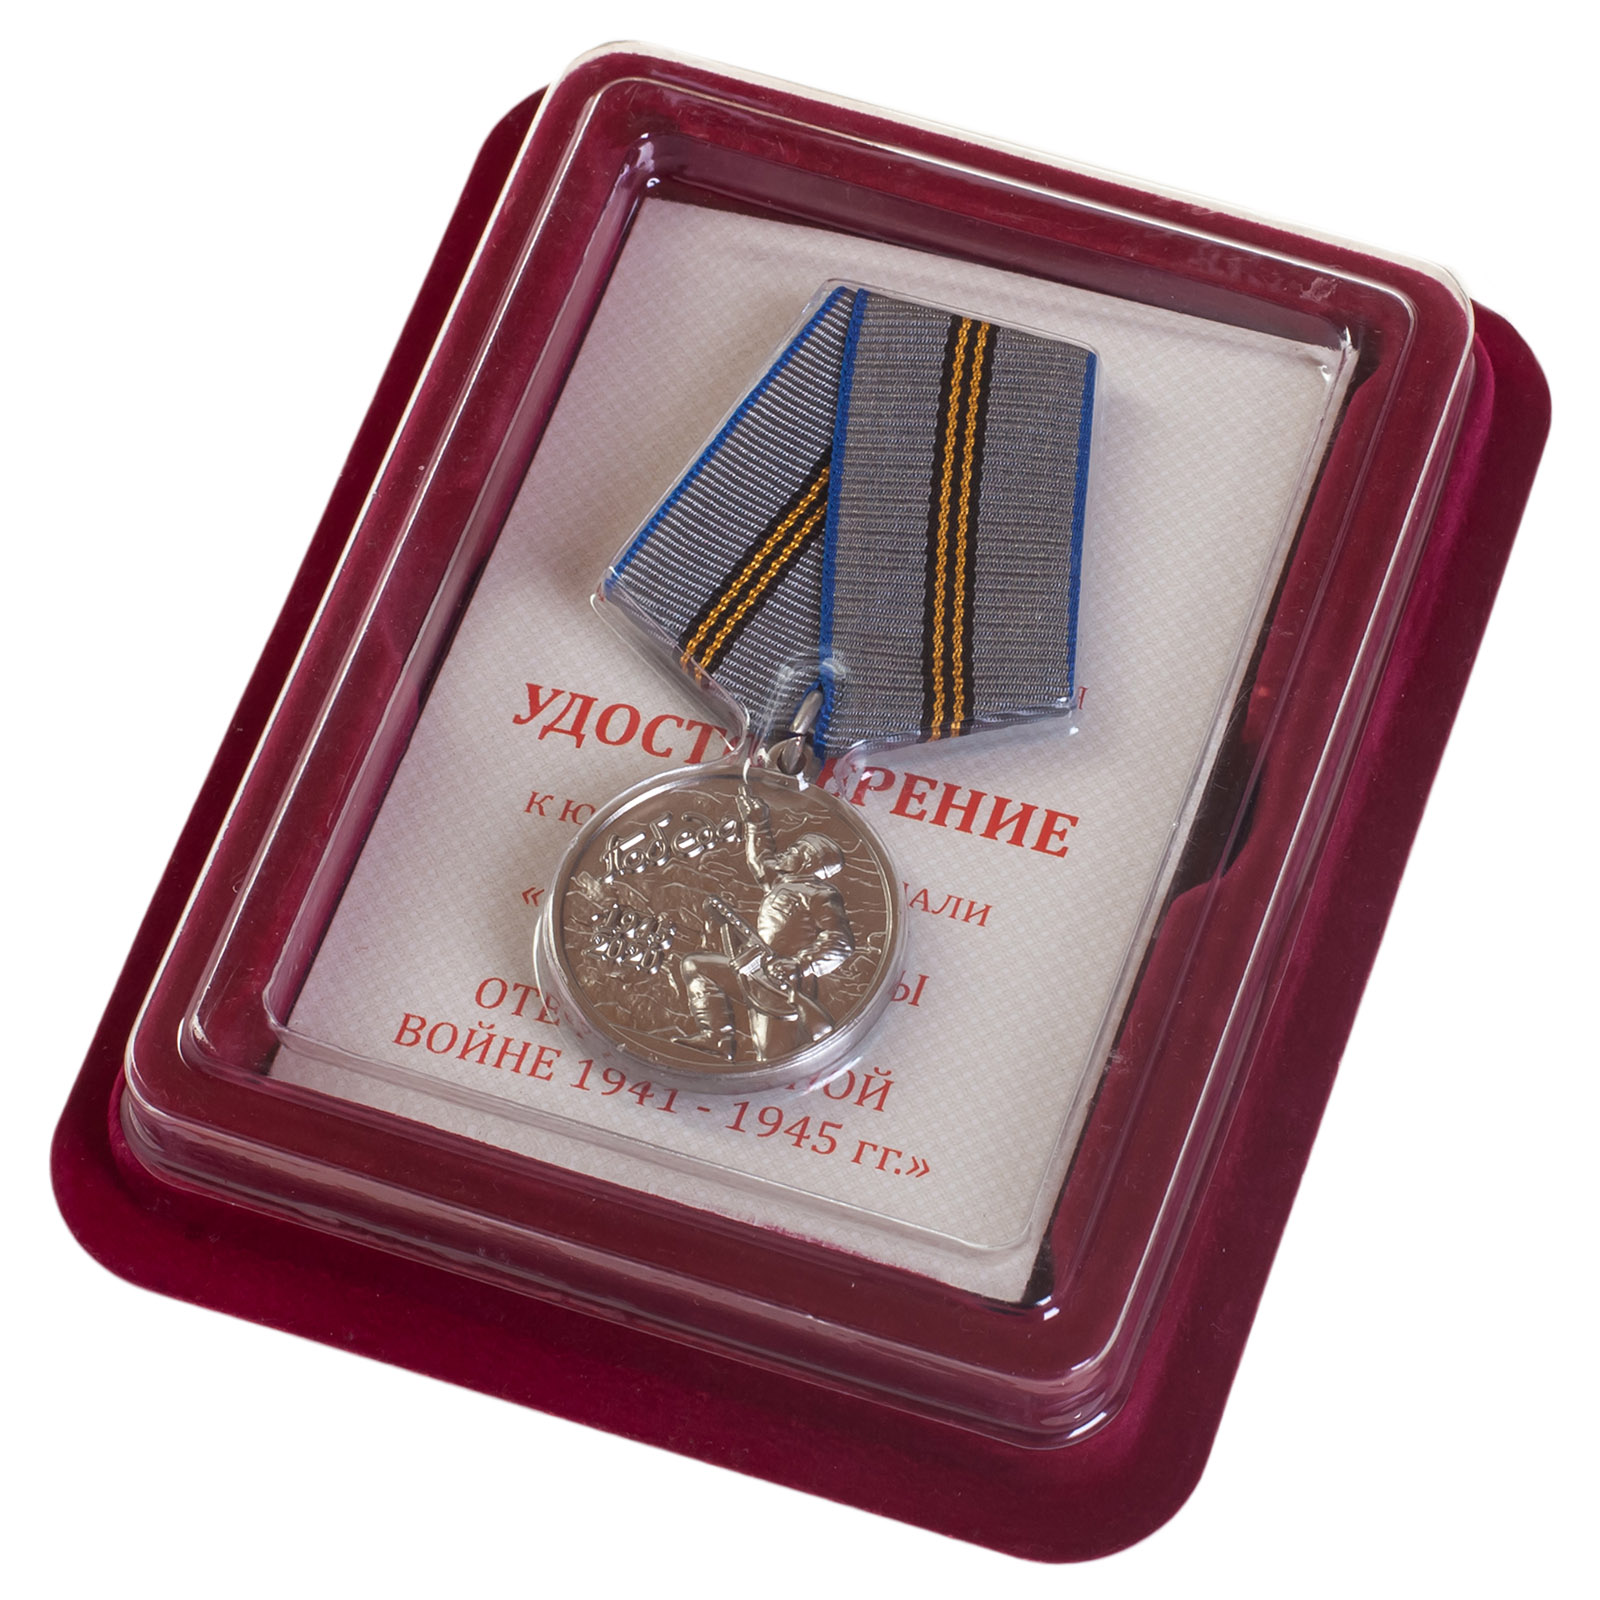 Купить латунную медаль 75 лет Победы в ВОВ 1941-1945 гг. по выгодной цене